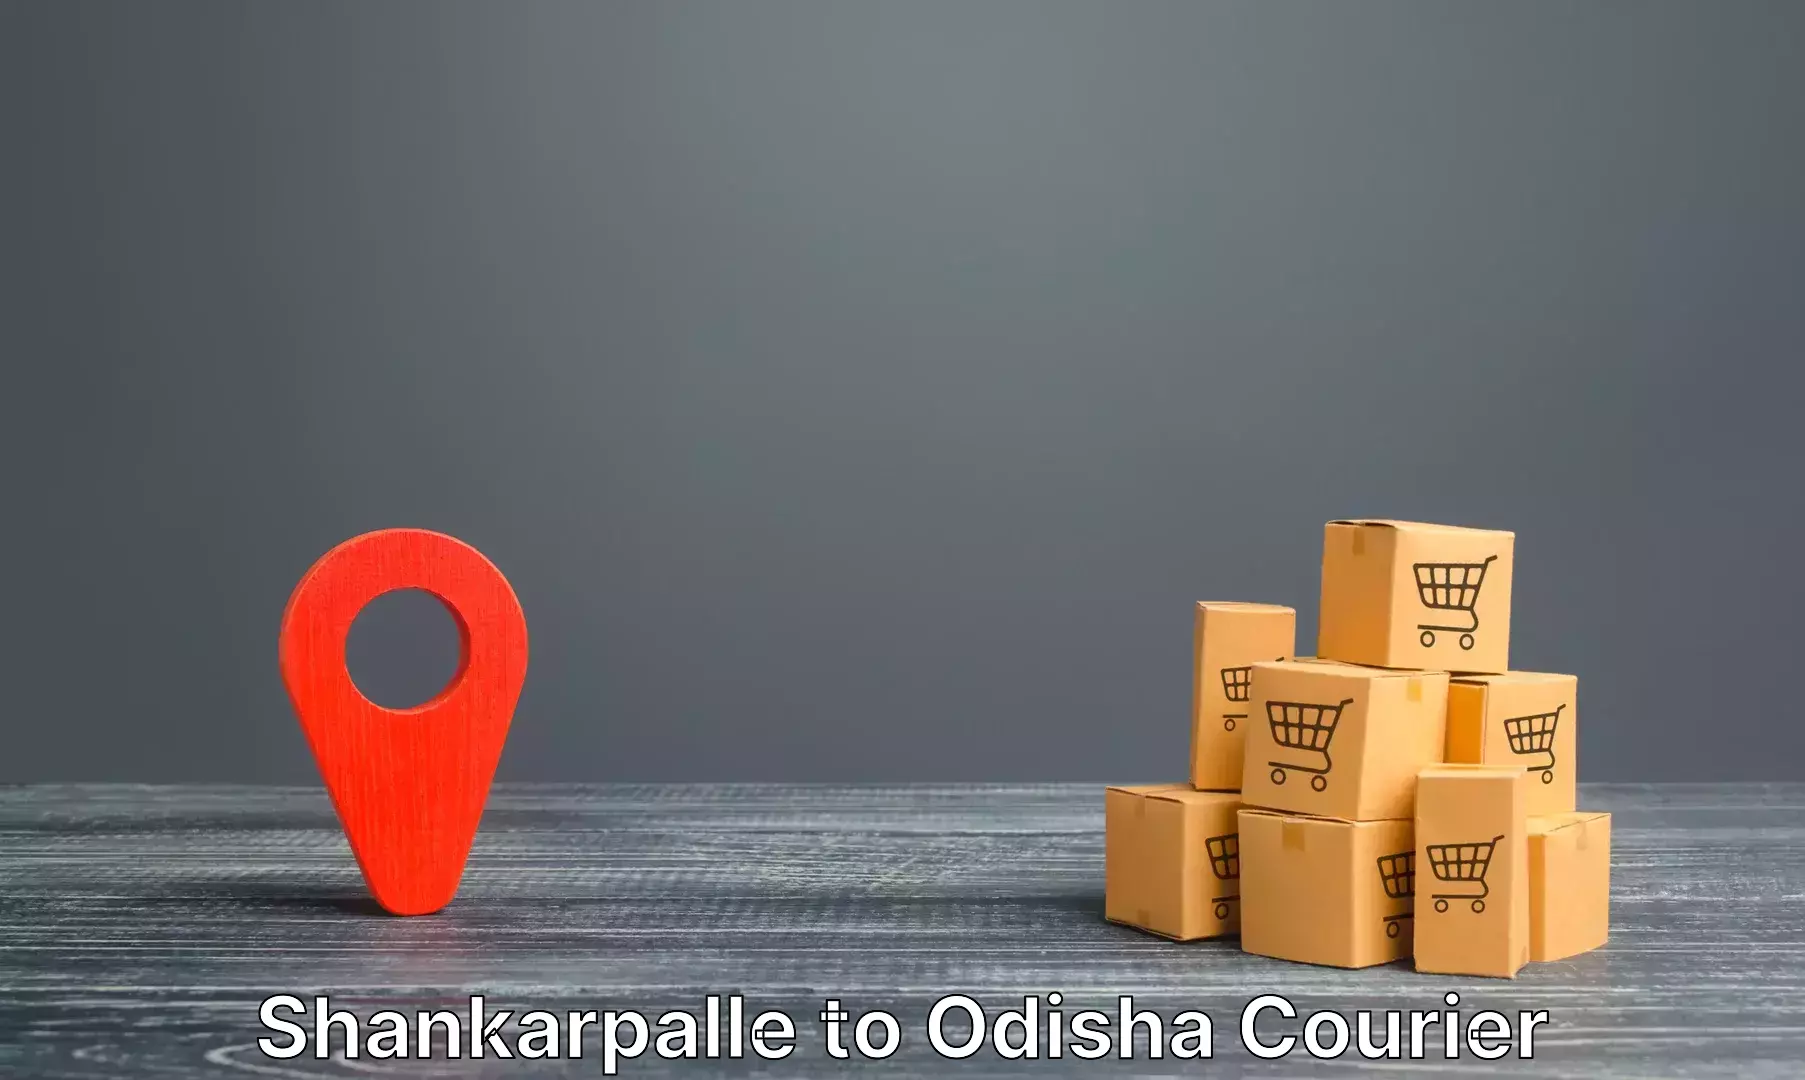 Luggage transit service Shankarpalle to Odisha